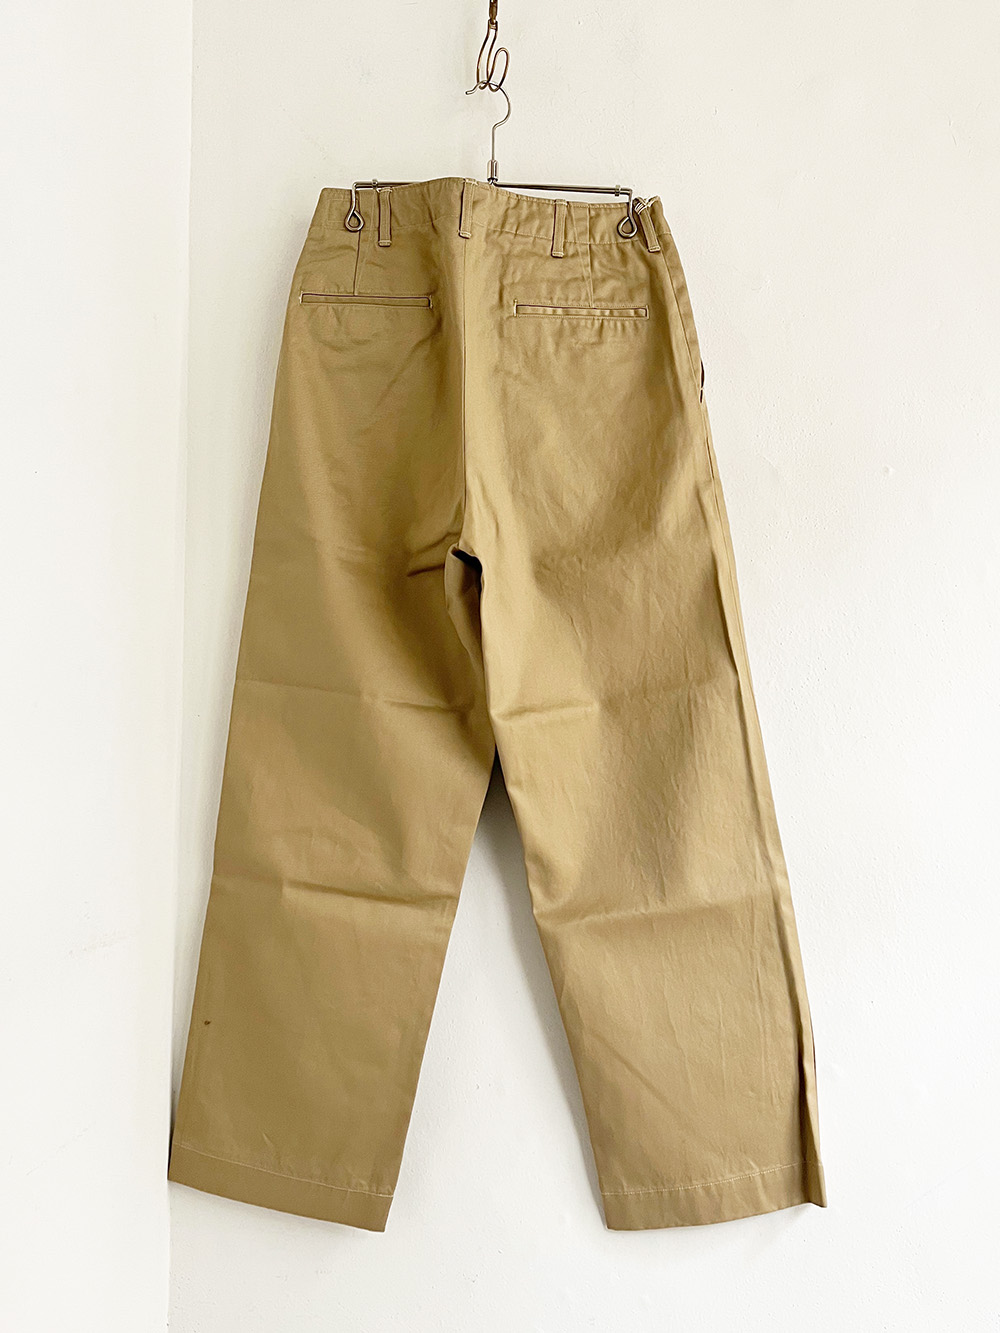 orSlow _ Vintage Fit Army Trouser (Unisex) / Khaki-0 | R1